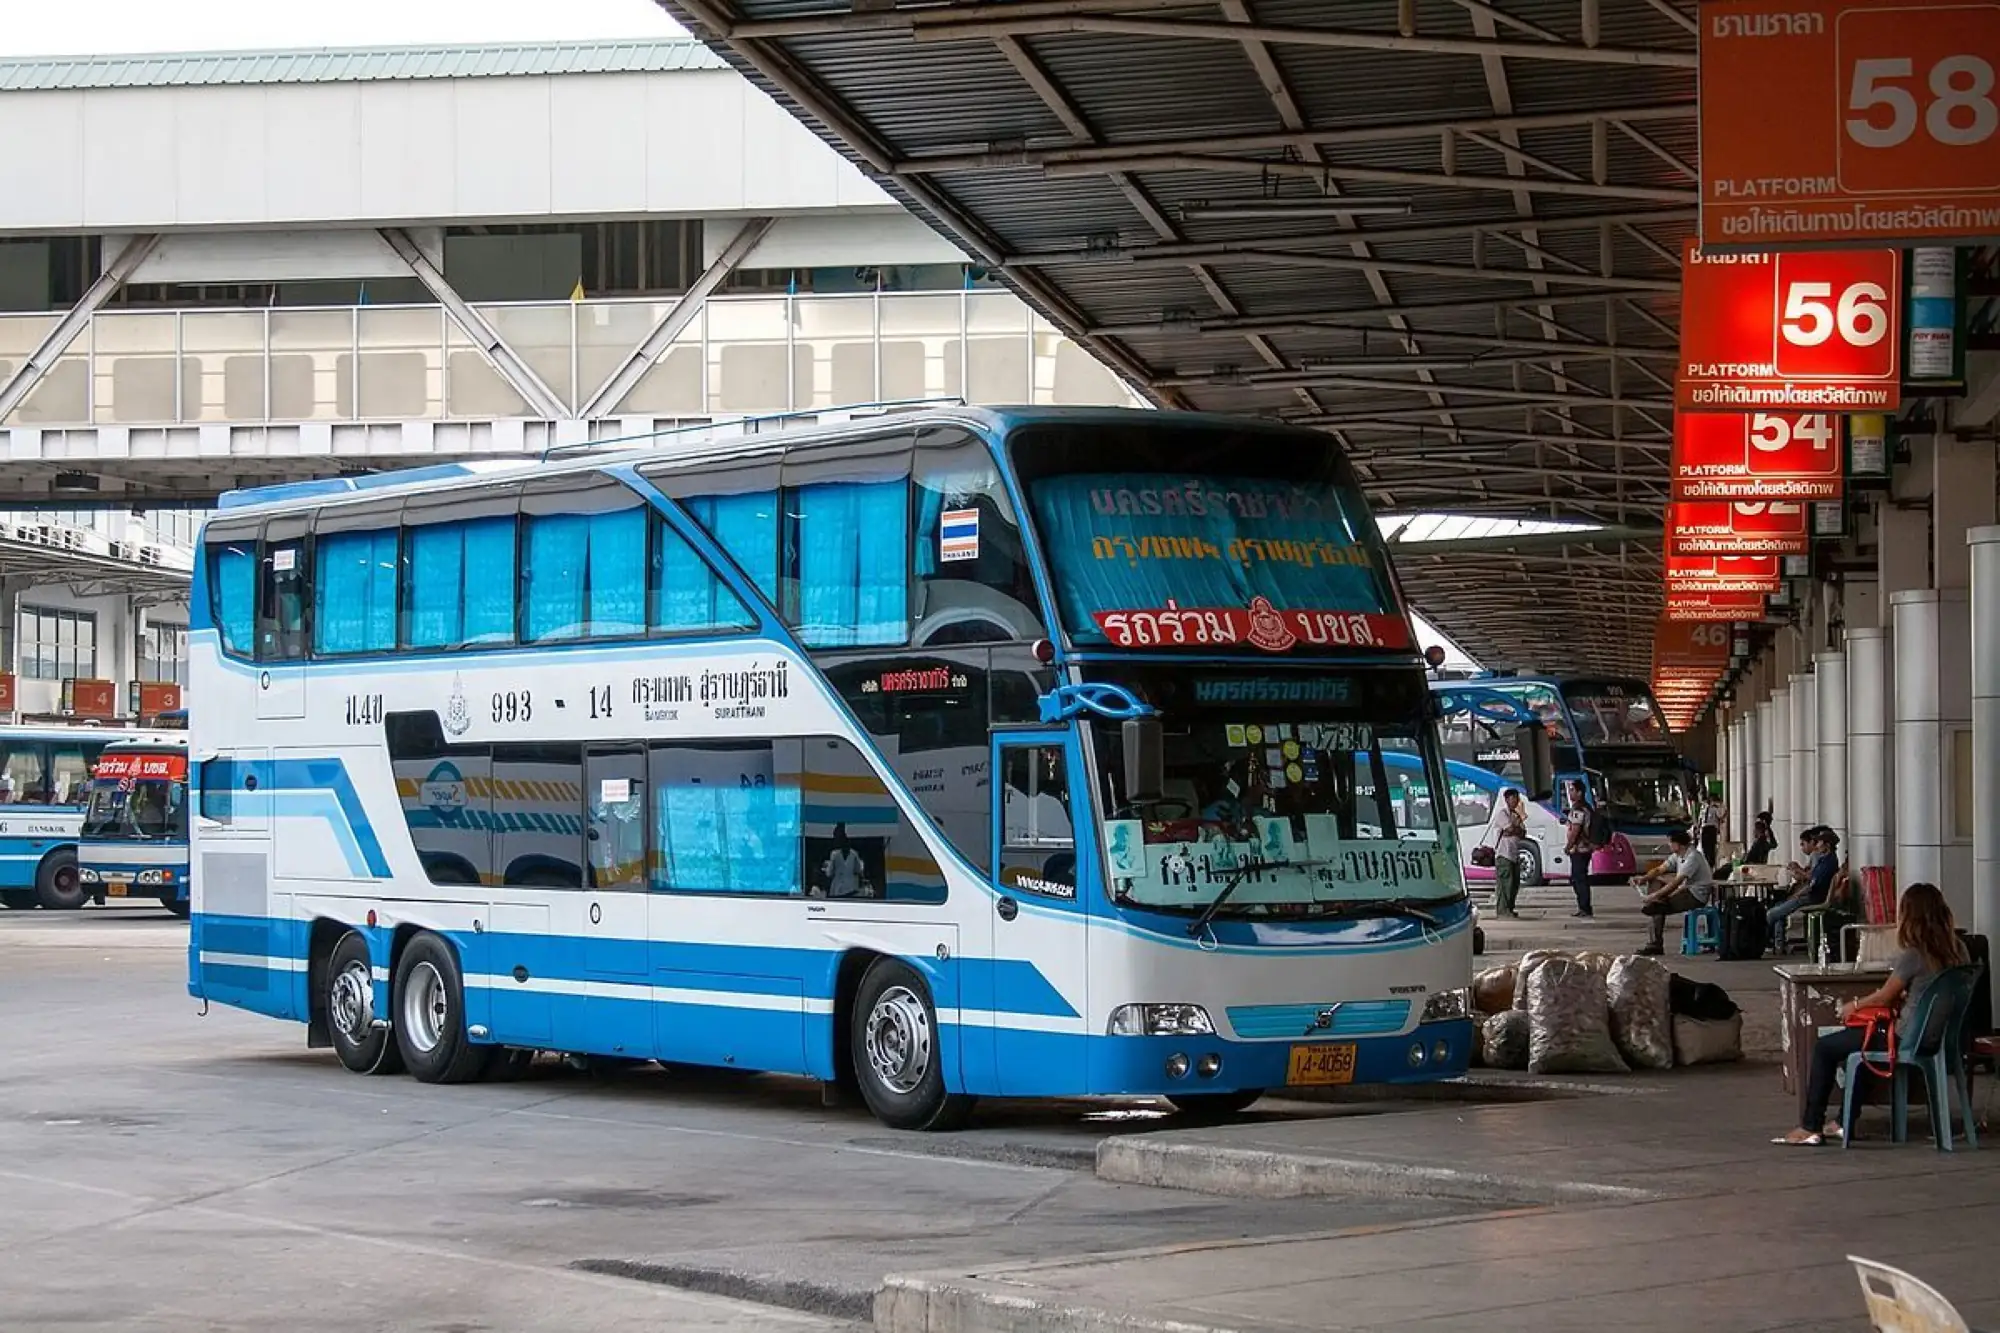 曼谷 大眾運輸 捷運 BTS 地鐵 MRT 曼谷交通 曼谷巴士